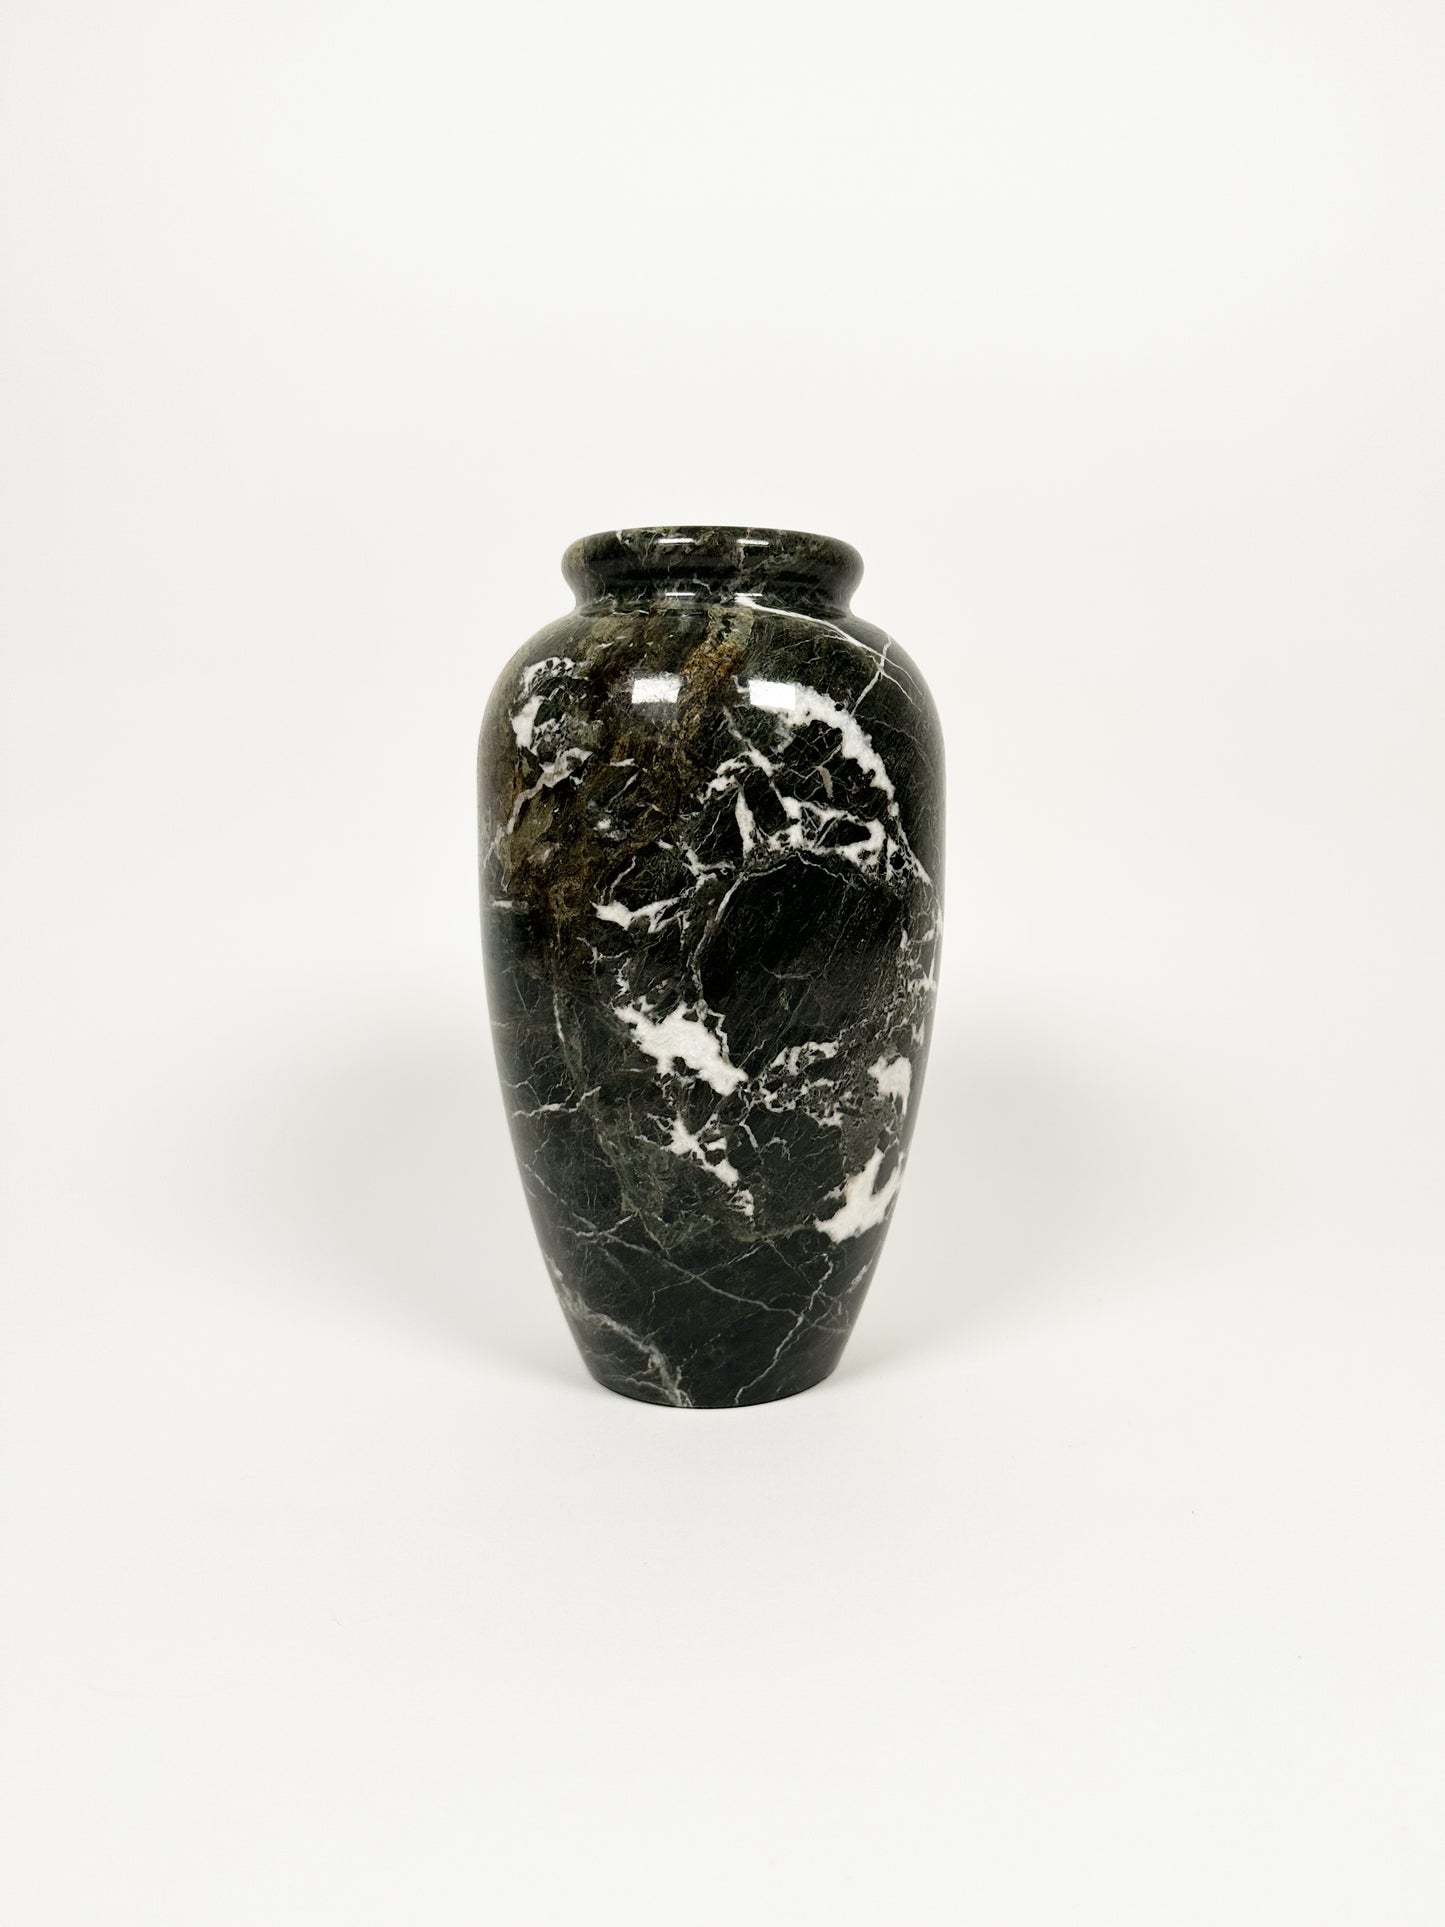 Heavy Marble Vase